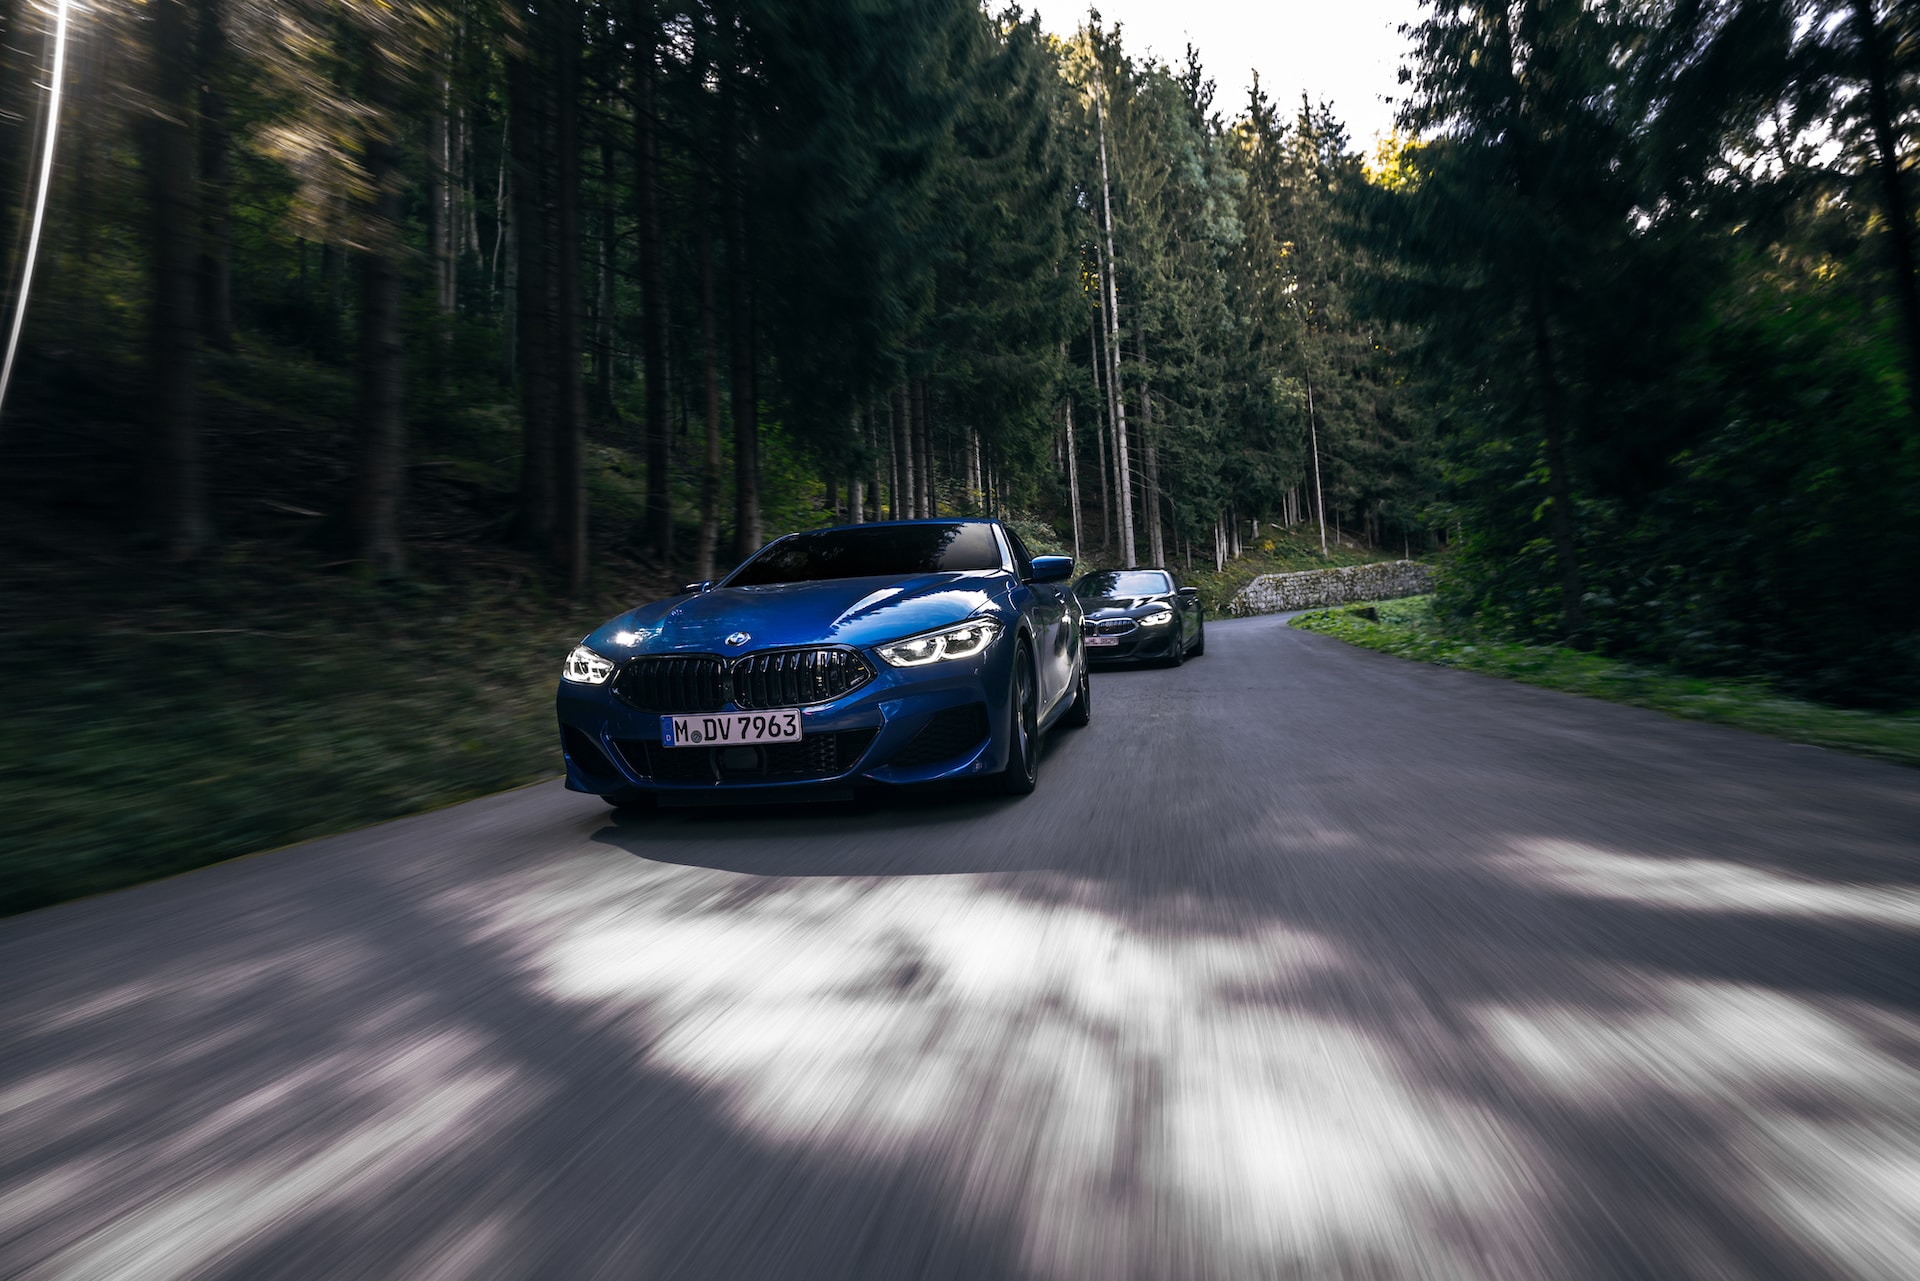 The Power of Choice: Für welches BMW Modell würdest du Dich entscheiden? 5